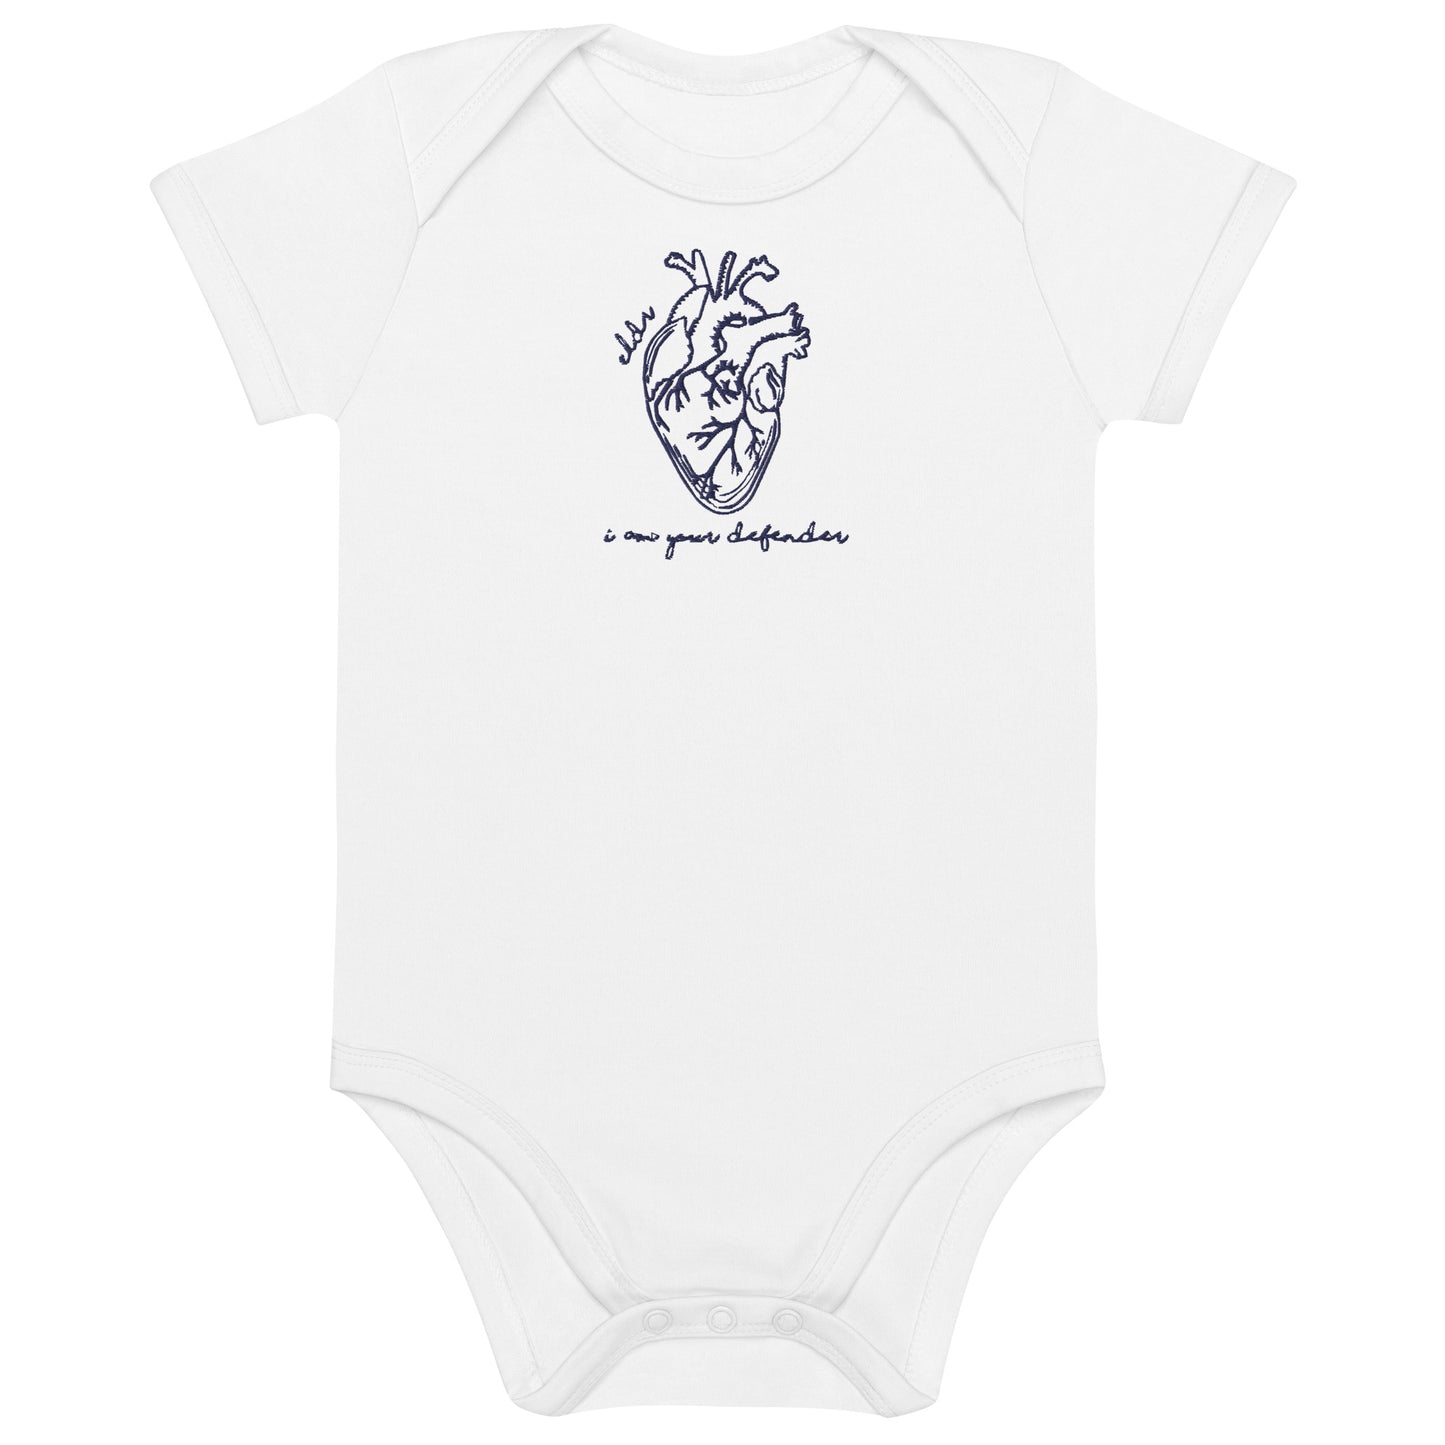 ELDR 'Defender' Organic Cotton Baby Bodysuit- Embroidered Heart Anatomy